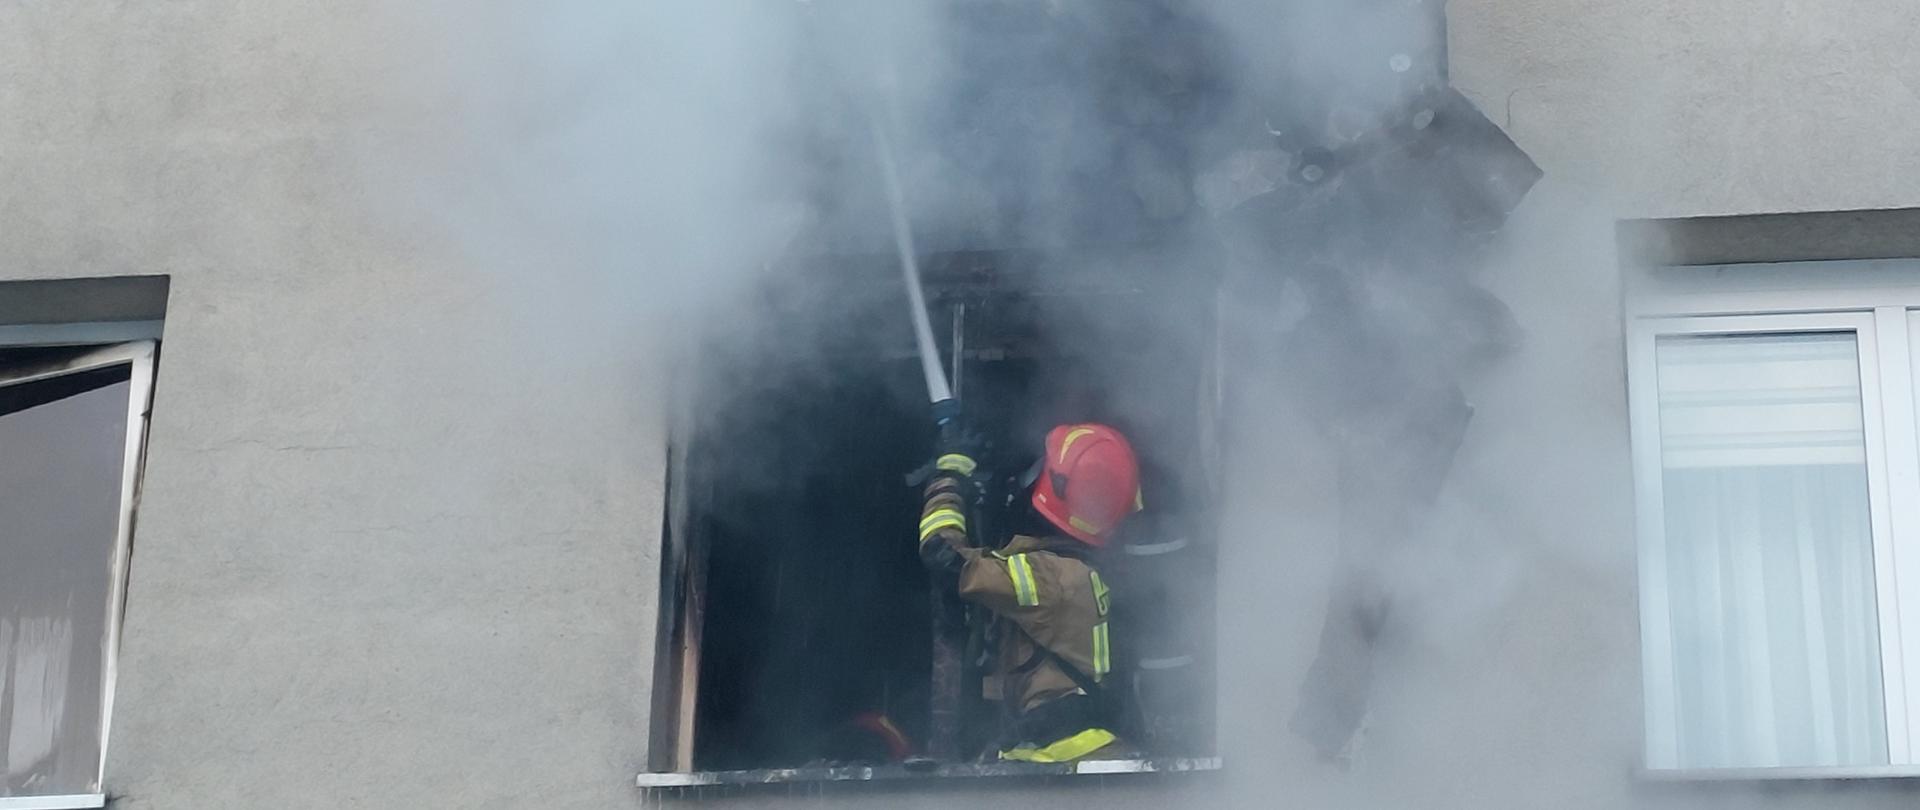 Strażak gasi wodą palącą się elewację nad wnęką okienną.